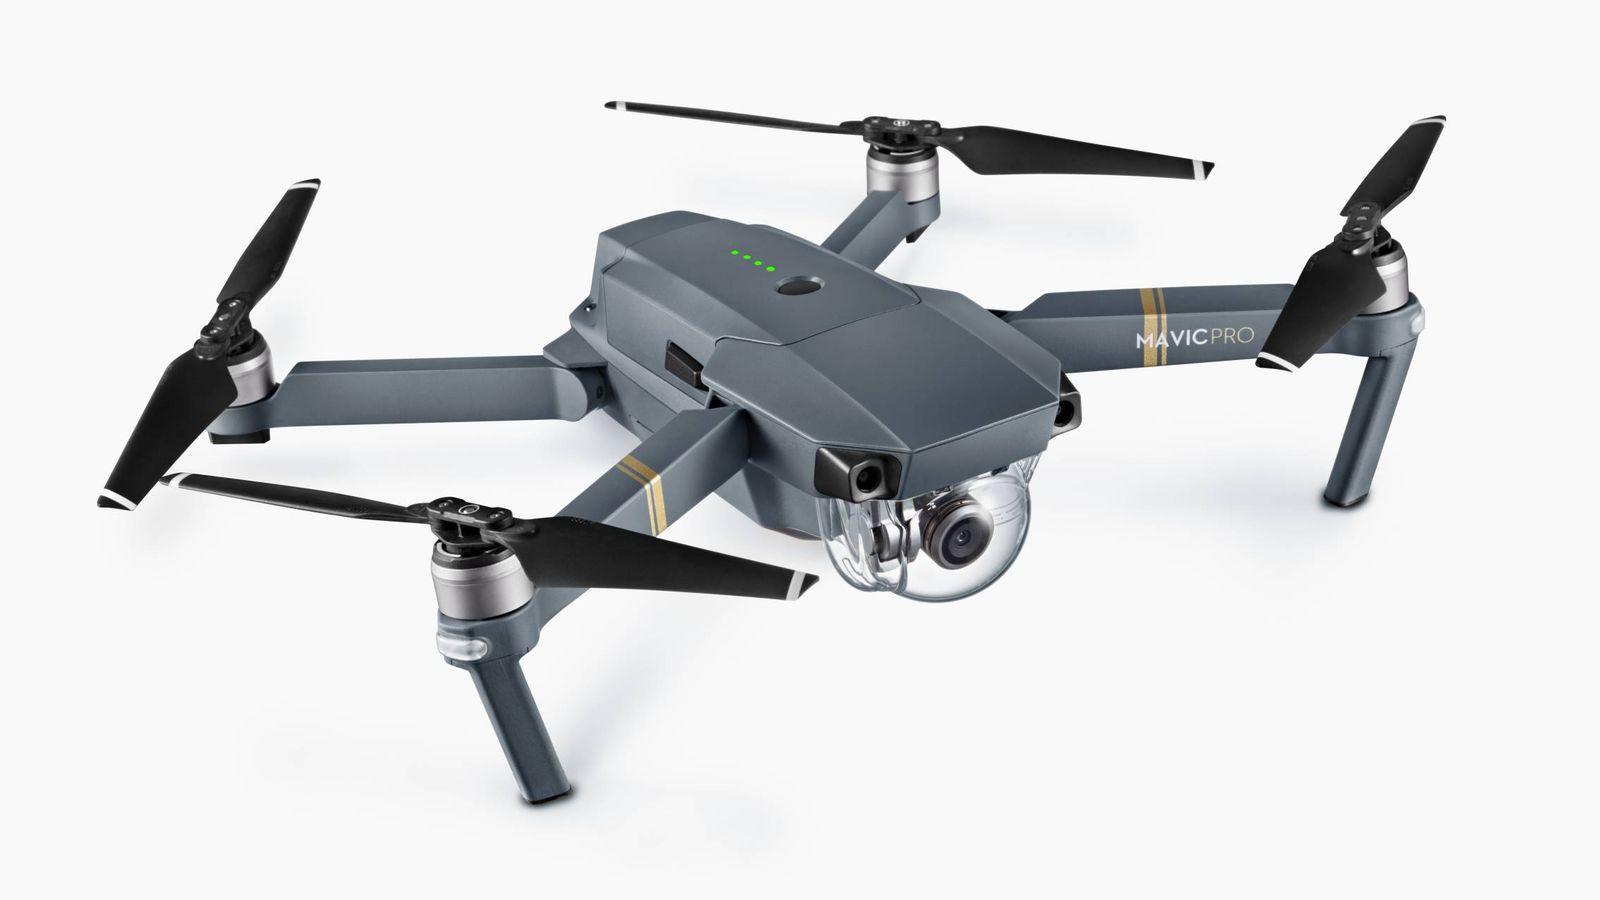 He probado el dron más pequeño y potente de DJI: cualquiera puede volar con  él como un profesional